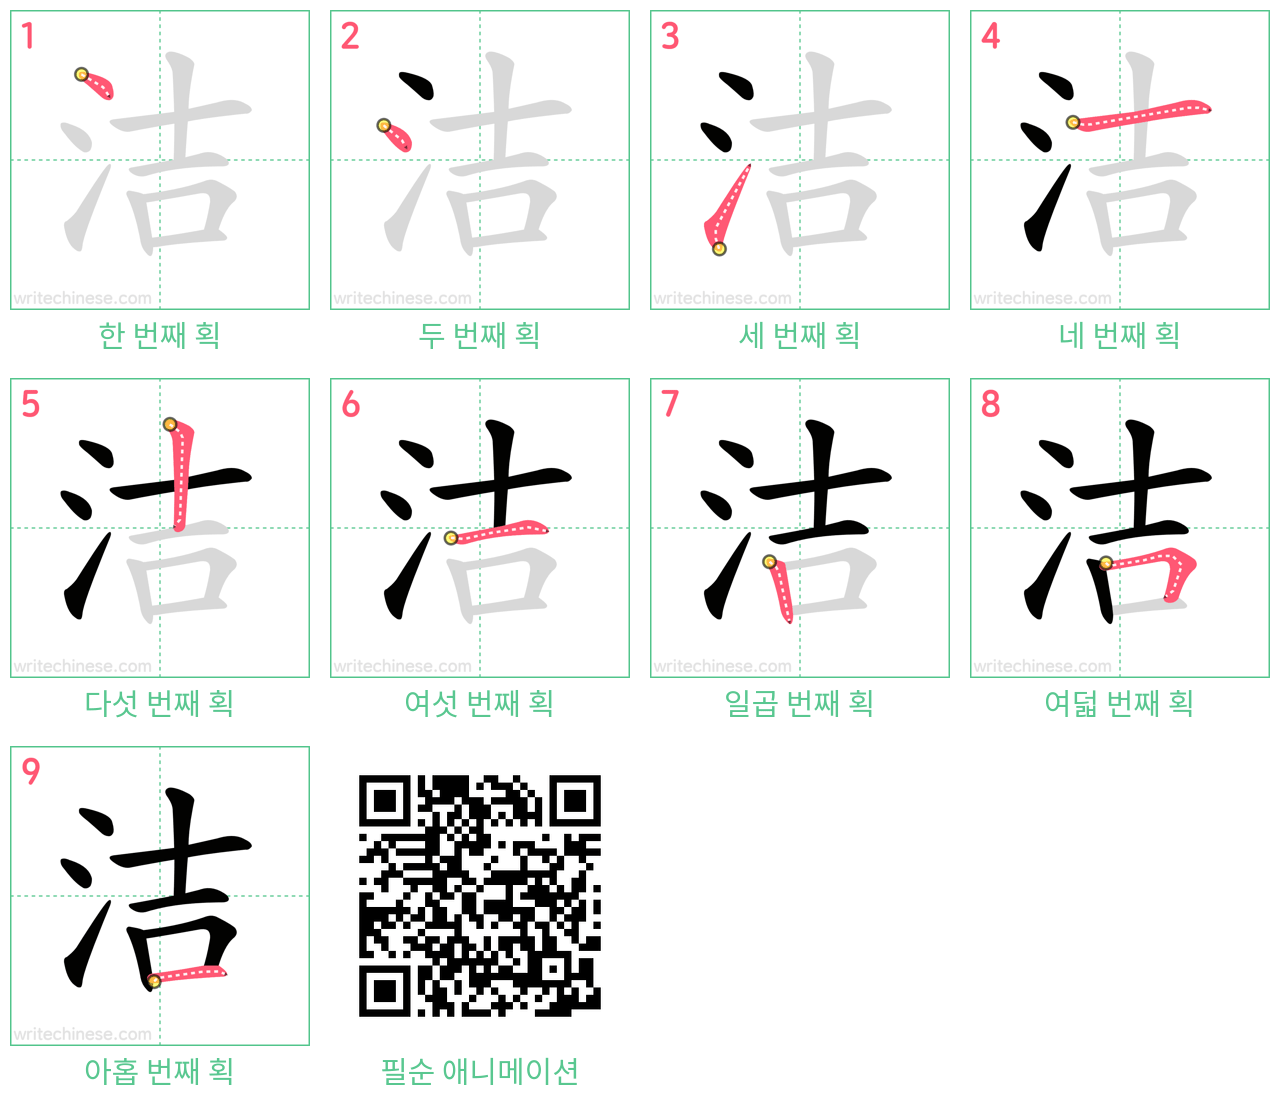 洁 step-by-step stroke order diagrams